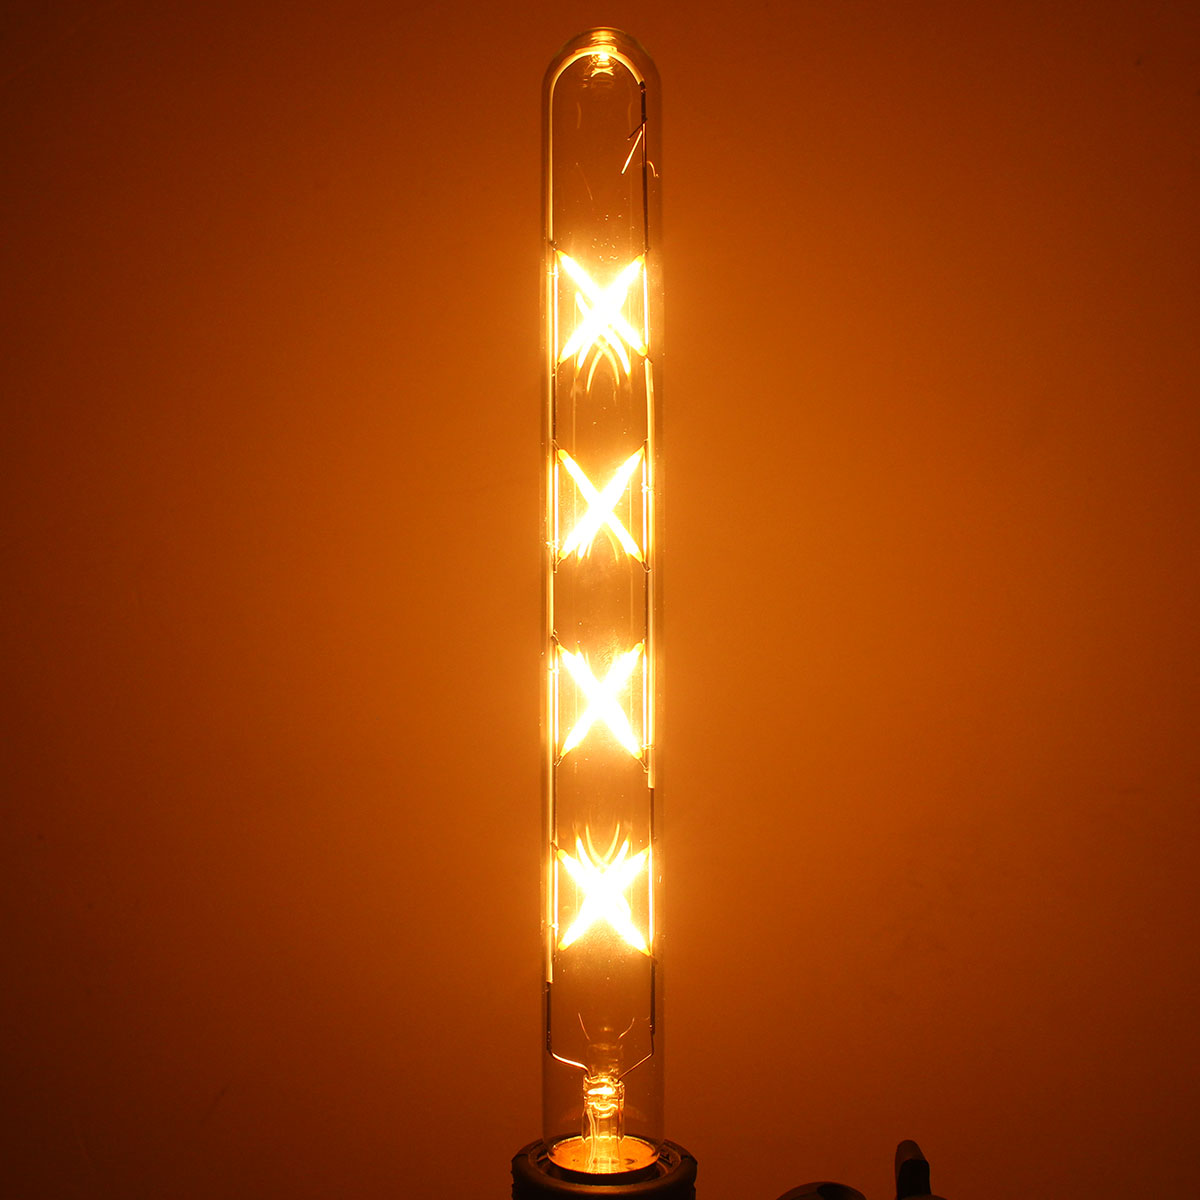 

Ретро свет лампы переменного тока 220В / 110В Винтаж E26 8W лампы накаливания E27 Edison луковицы T30 Лампа затемняемый